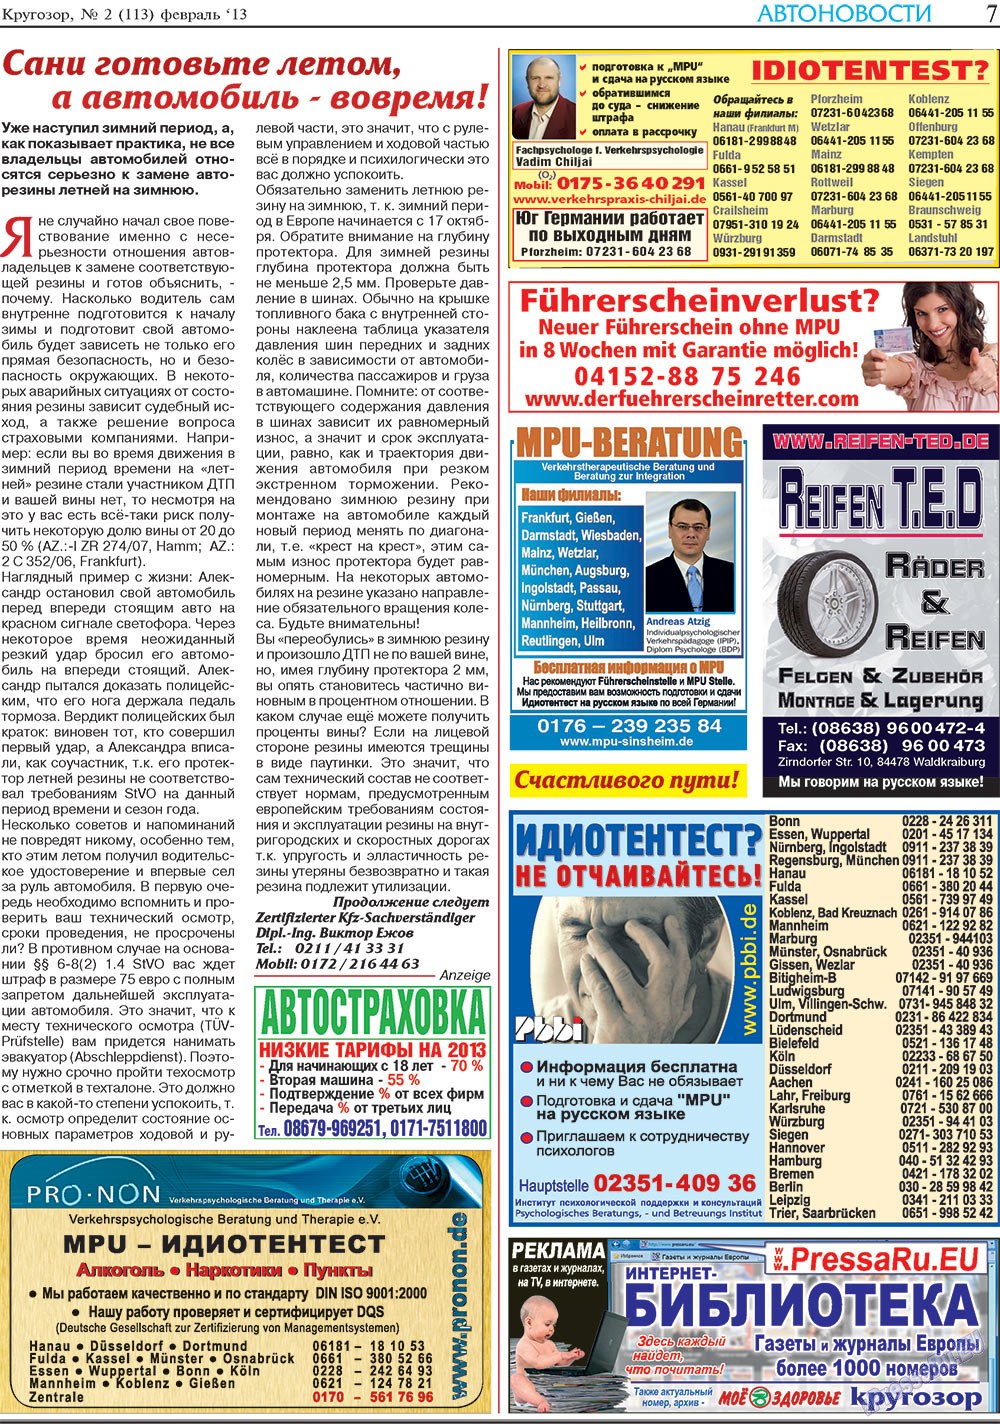 Кругозор, газета. 2013 №2 стр.7